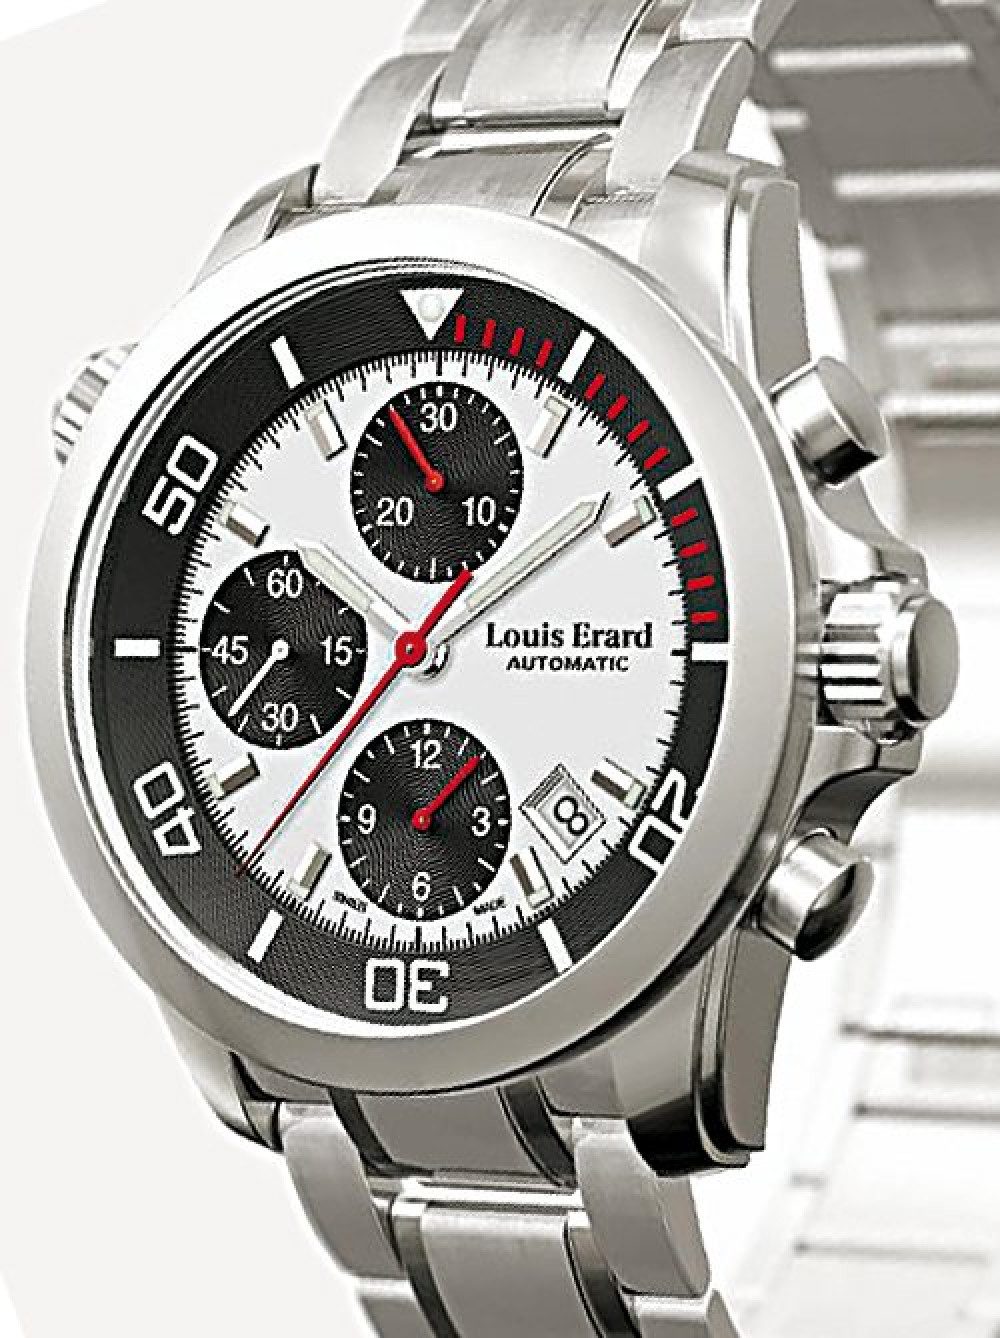 Zegarek firmy Louis Erard, model Move